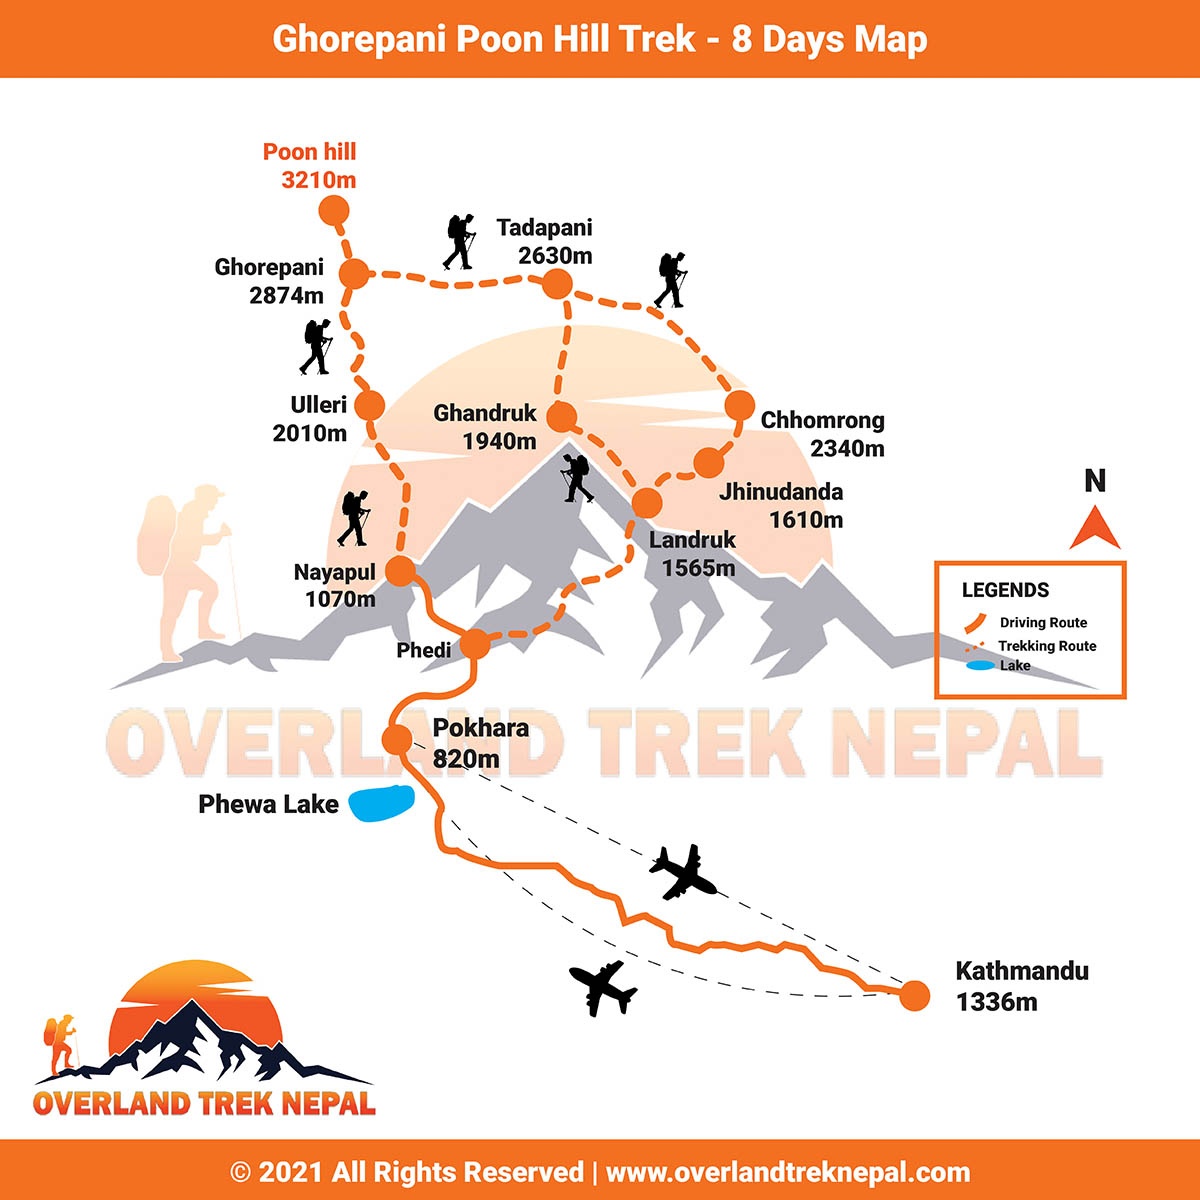 tourhub | Overland Trek Nepal | Poon Hill Hotspring Trekking – 10 Days | Tour Map